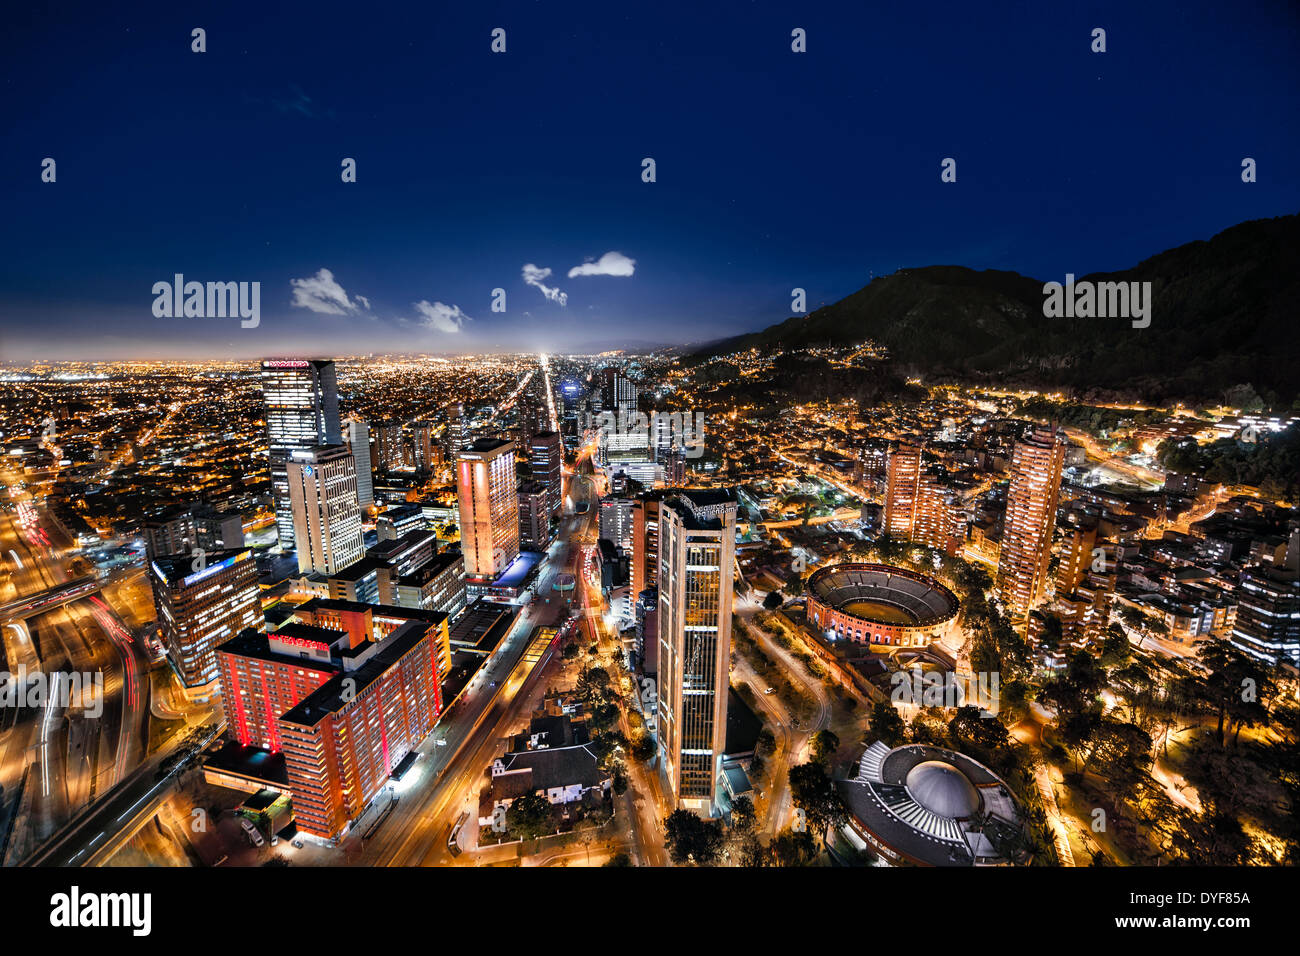 Vue panoramique vue de la nuit de Bogota, la capitale de la Colombie. Vue aérienne de l'Avenida Carrera Septima et les arènes. Banque D'Images